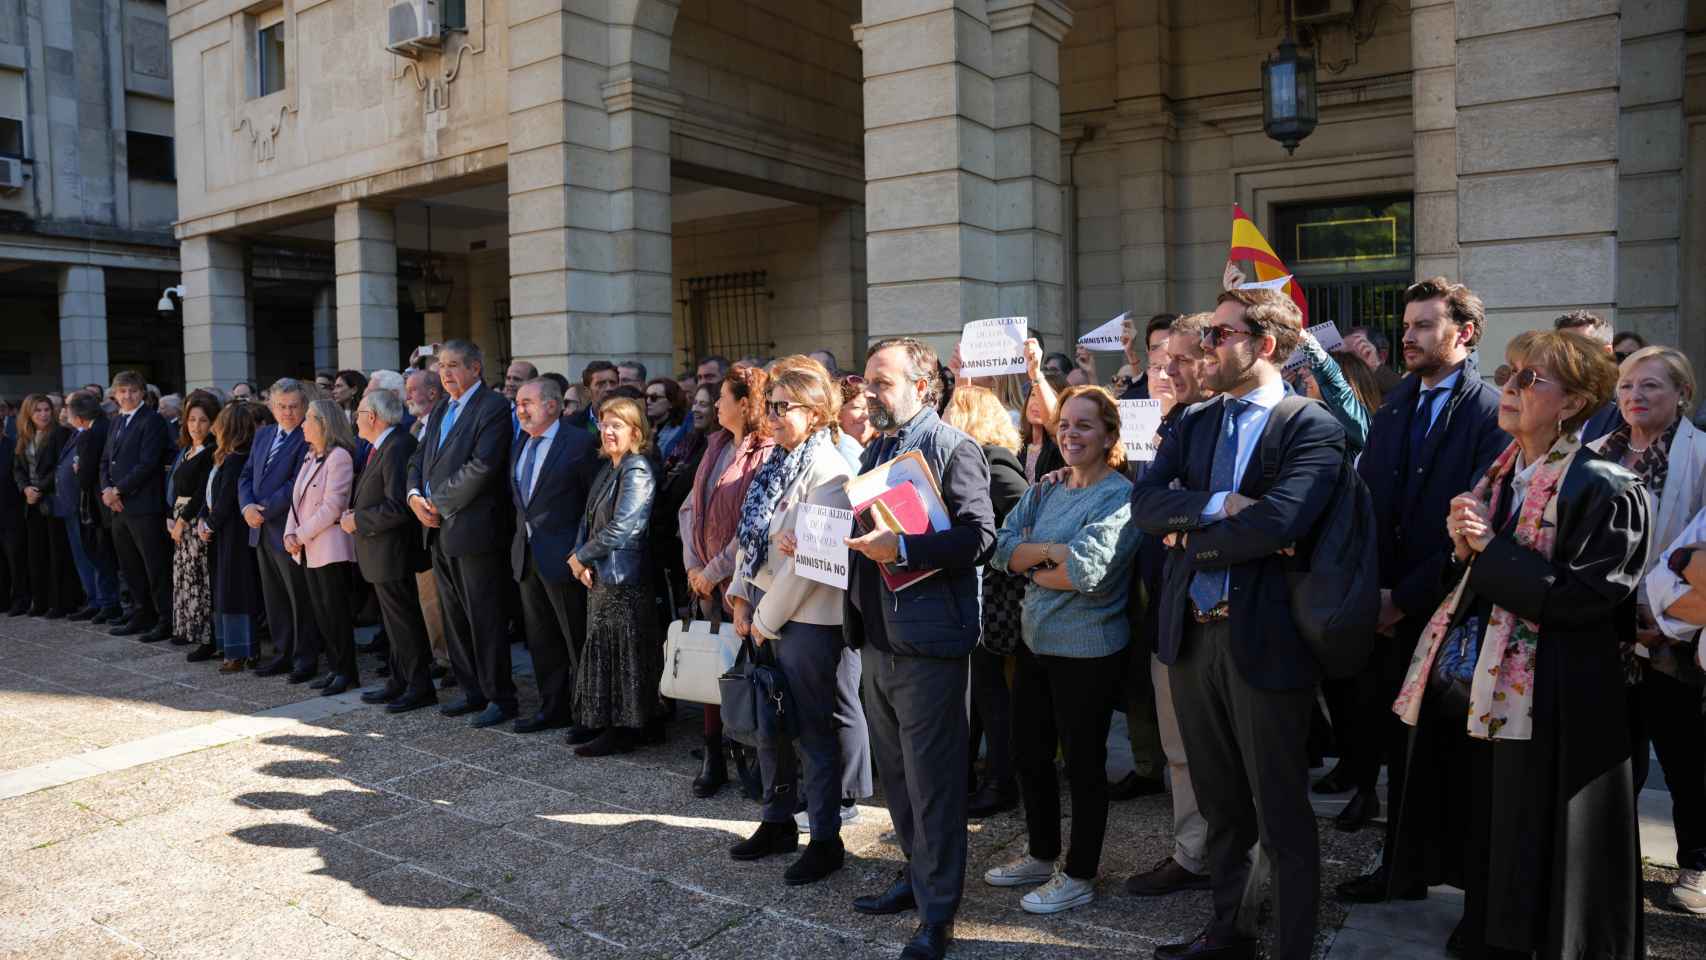 Concentración de jueces y magistrados contra la Ley de Amnistía pactada por el PSOE y Junts (Sevilla)